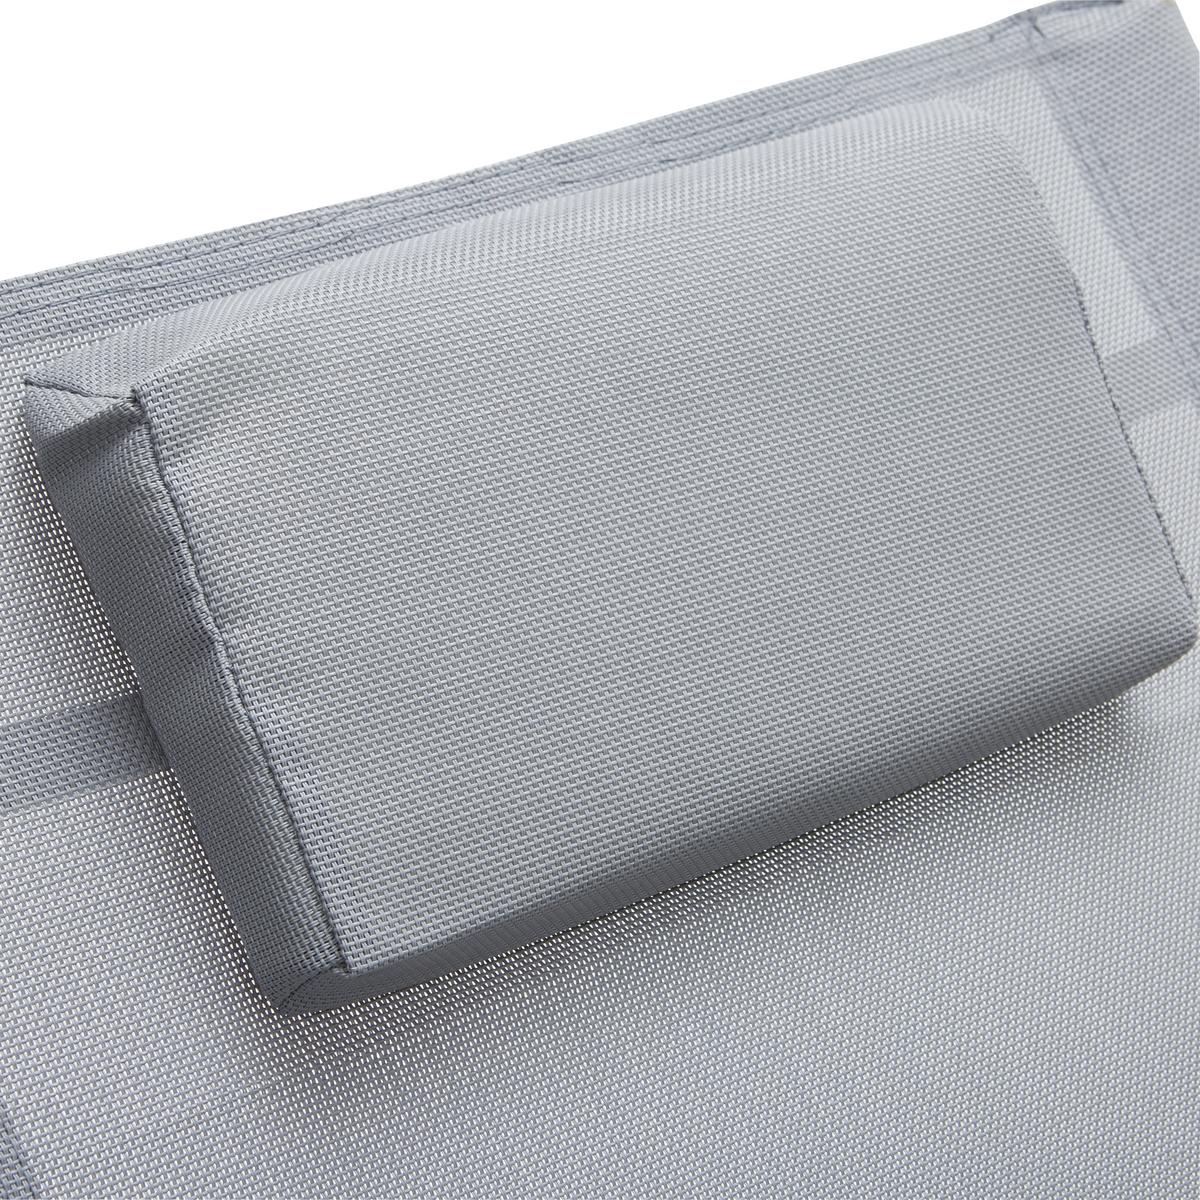 Sonnenliege Mirano Stahl Textilene mit Kopfkissen - Anthrazit, MODERN, Textil/Metall (63/85/148cm) - Ondega